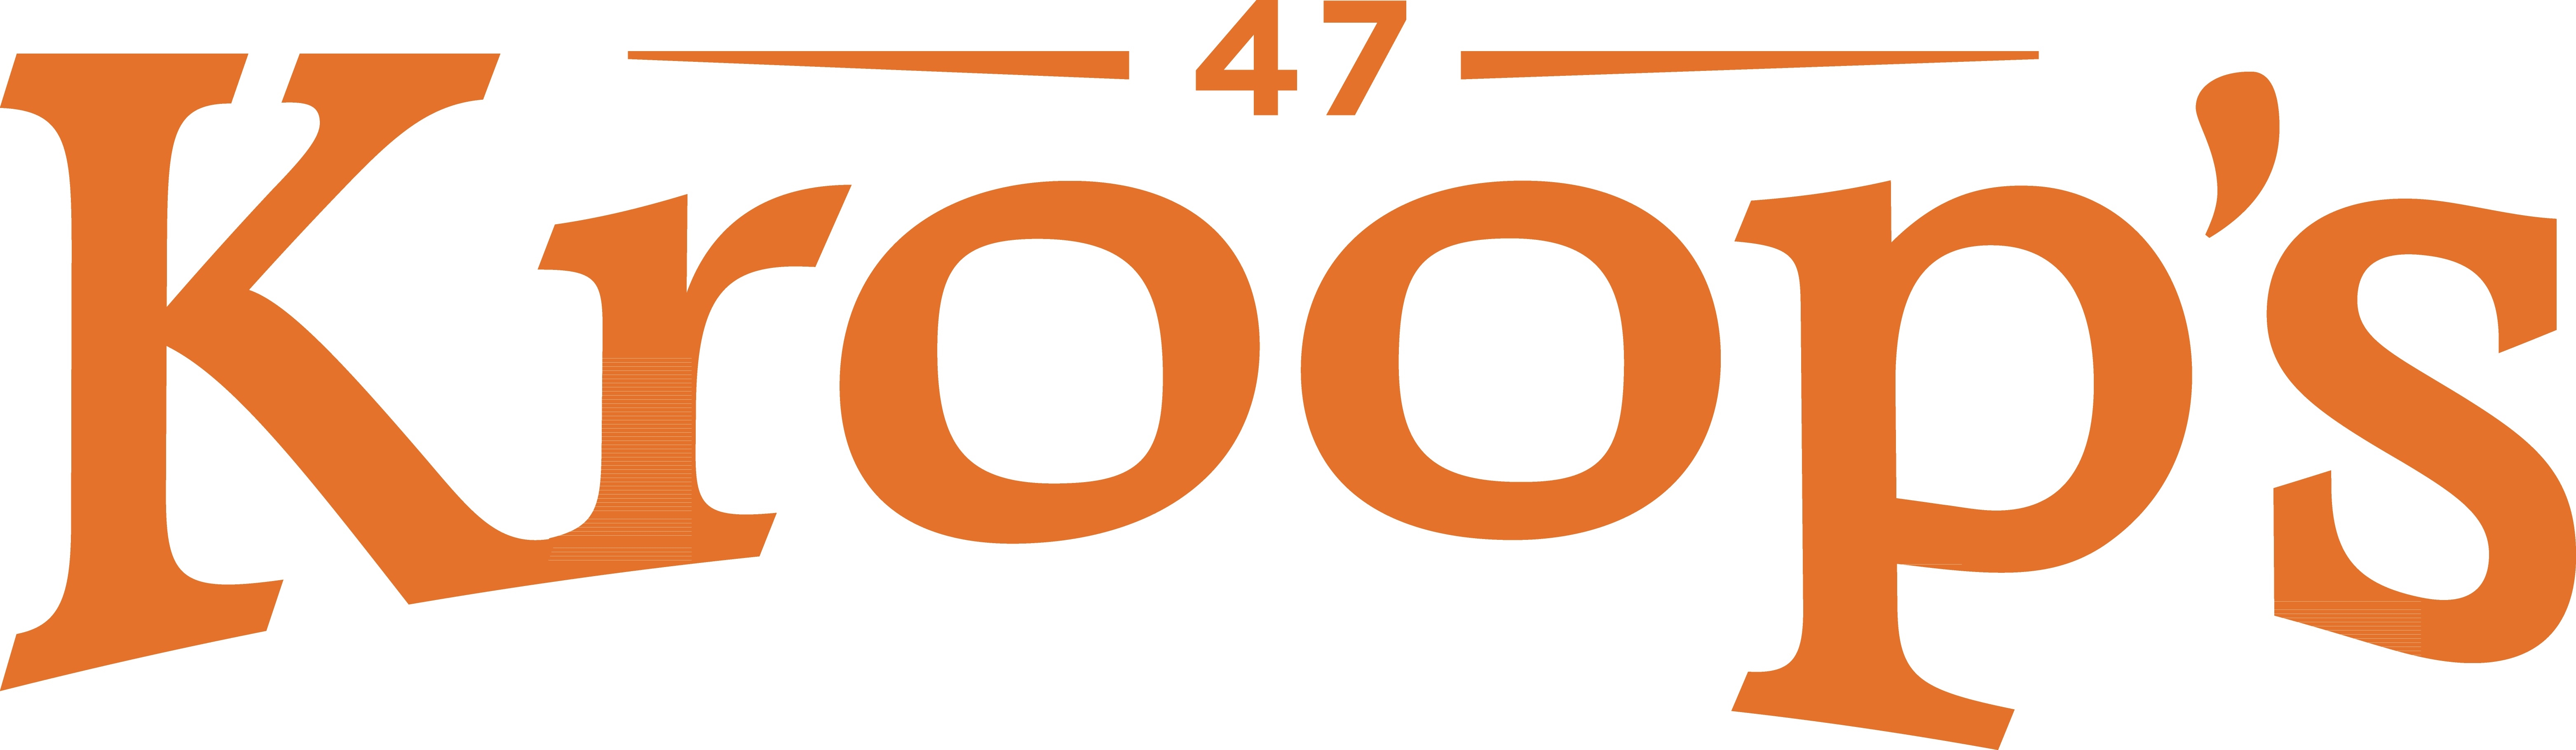 Kroop's Logo